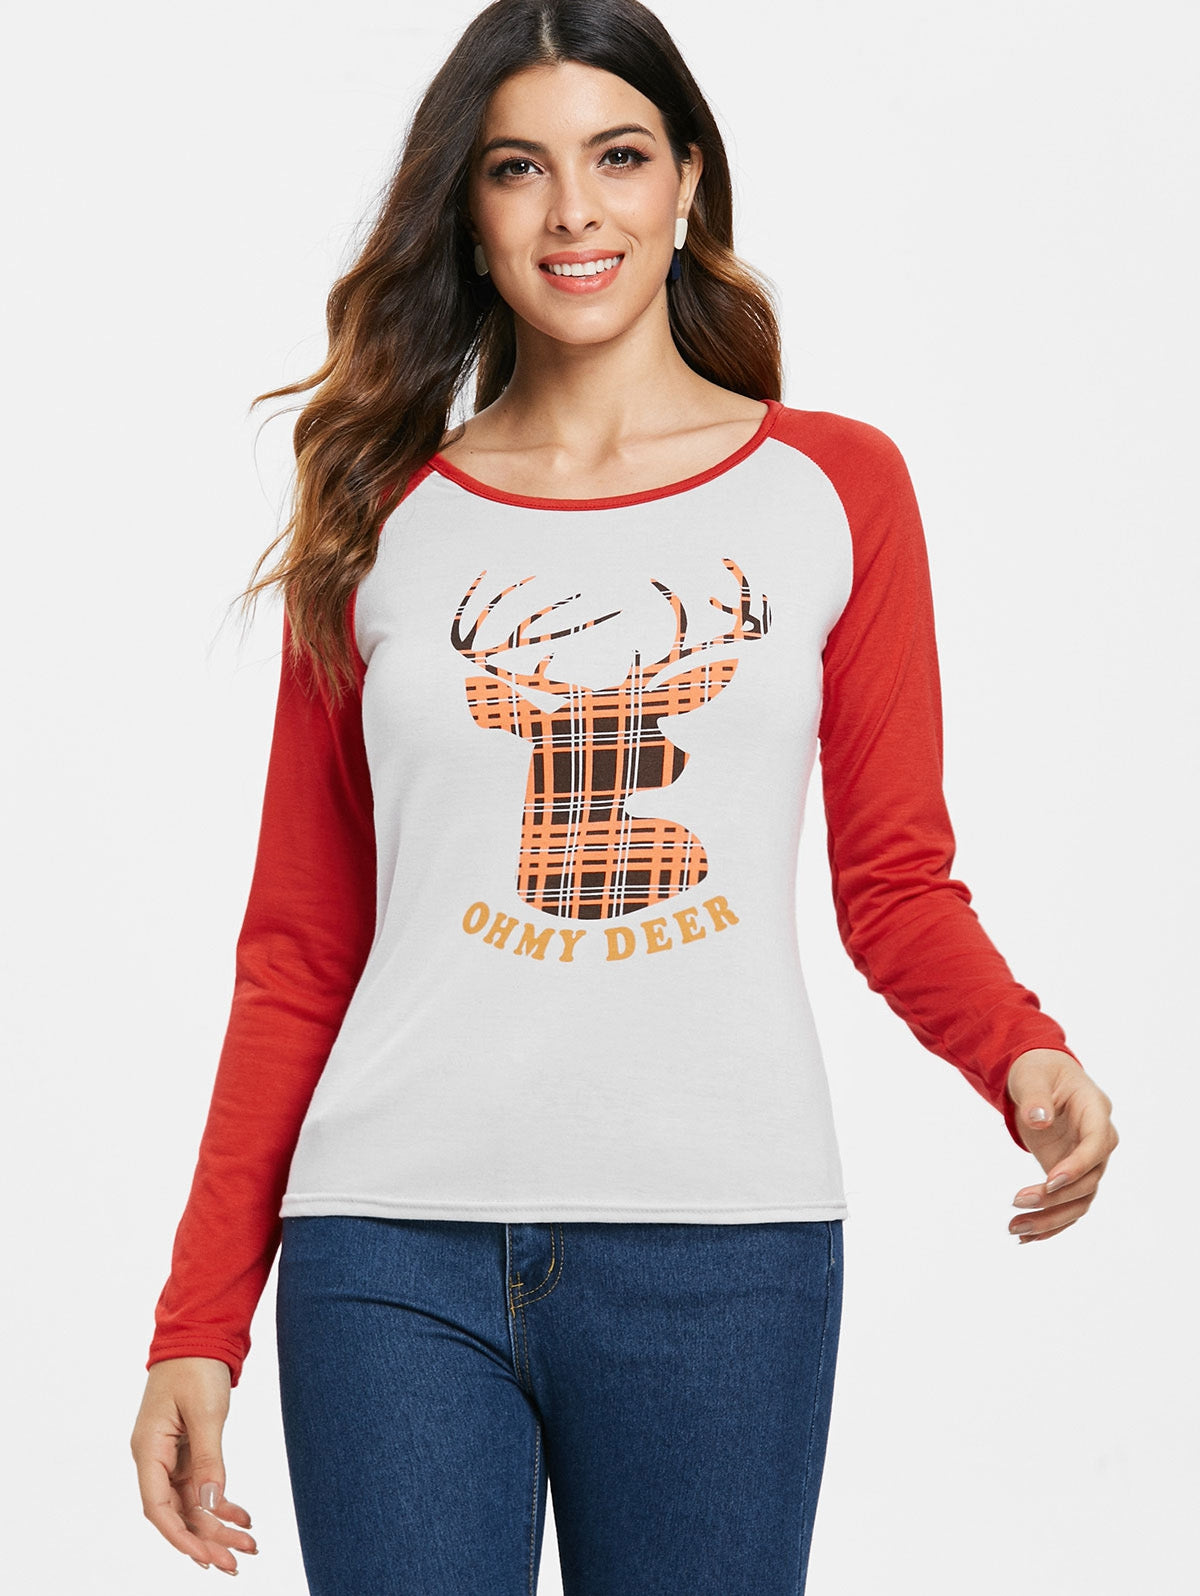 Christmas Slash Neck Long Sleeve Deer Pattern T-Shirt For Women